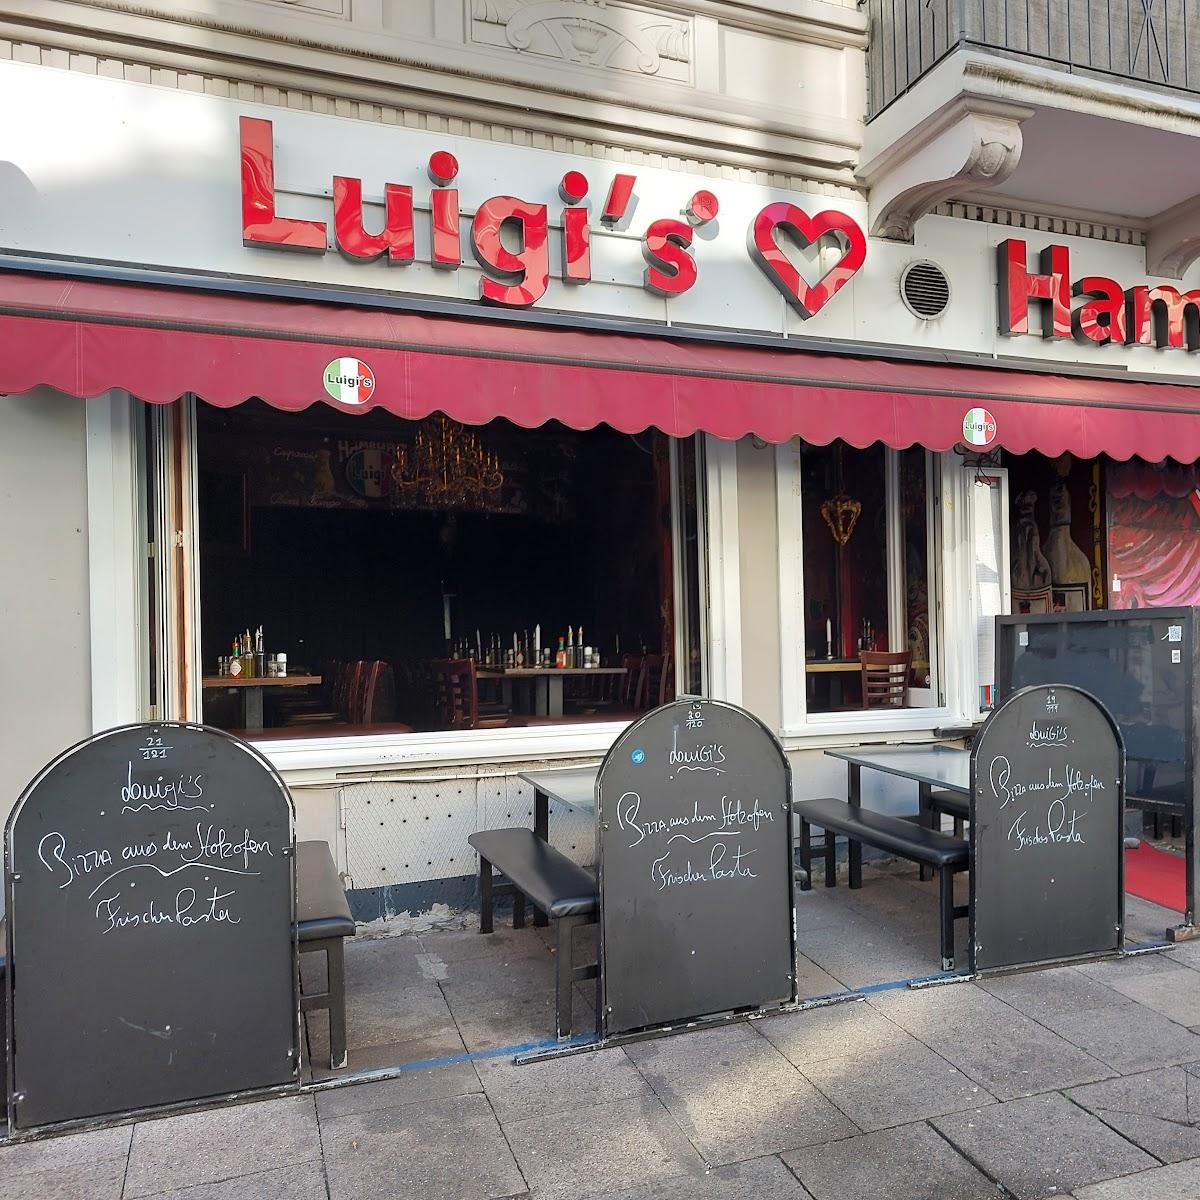 Restaurant "Luigi